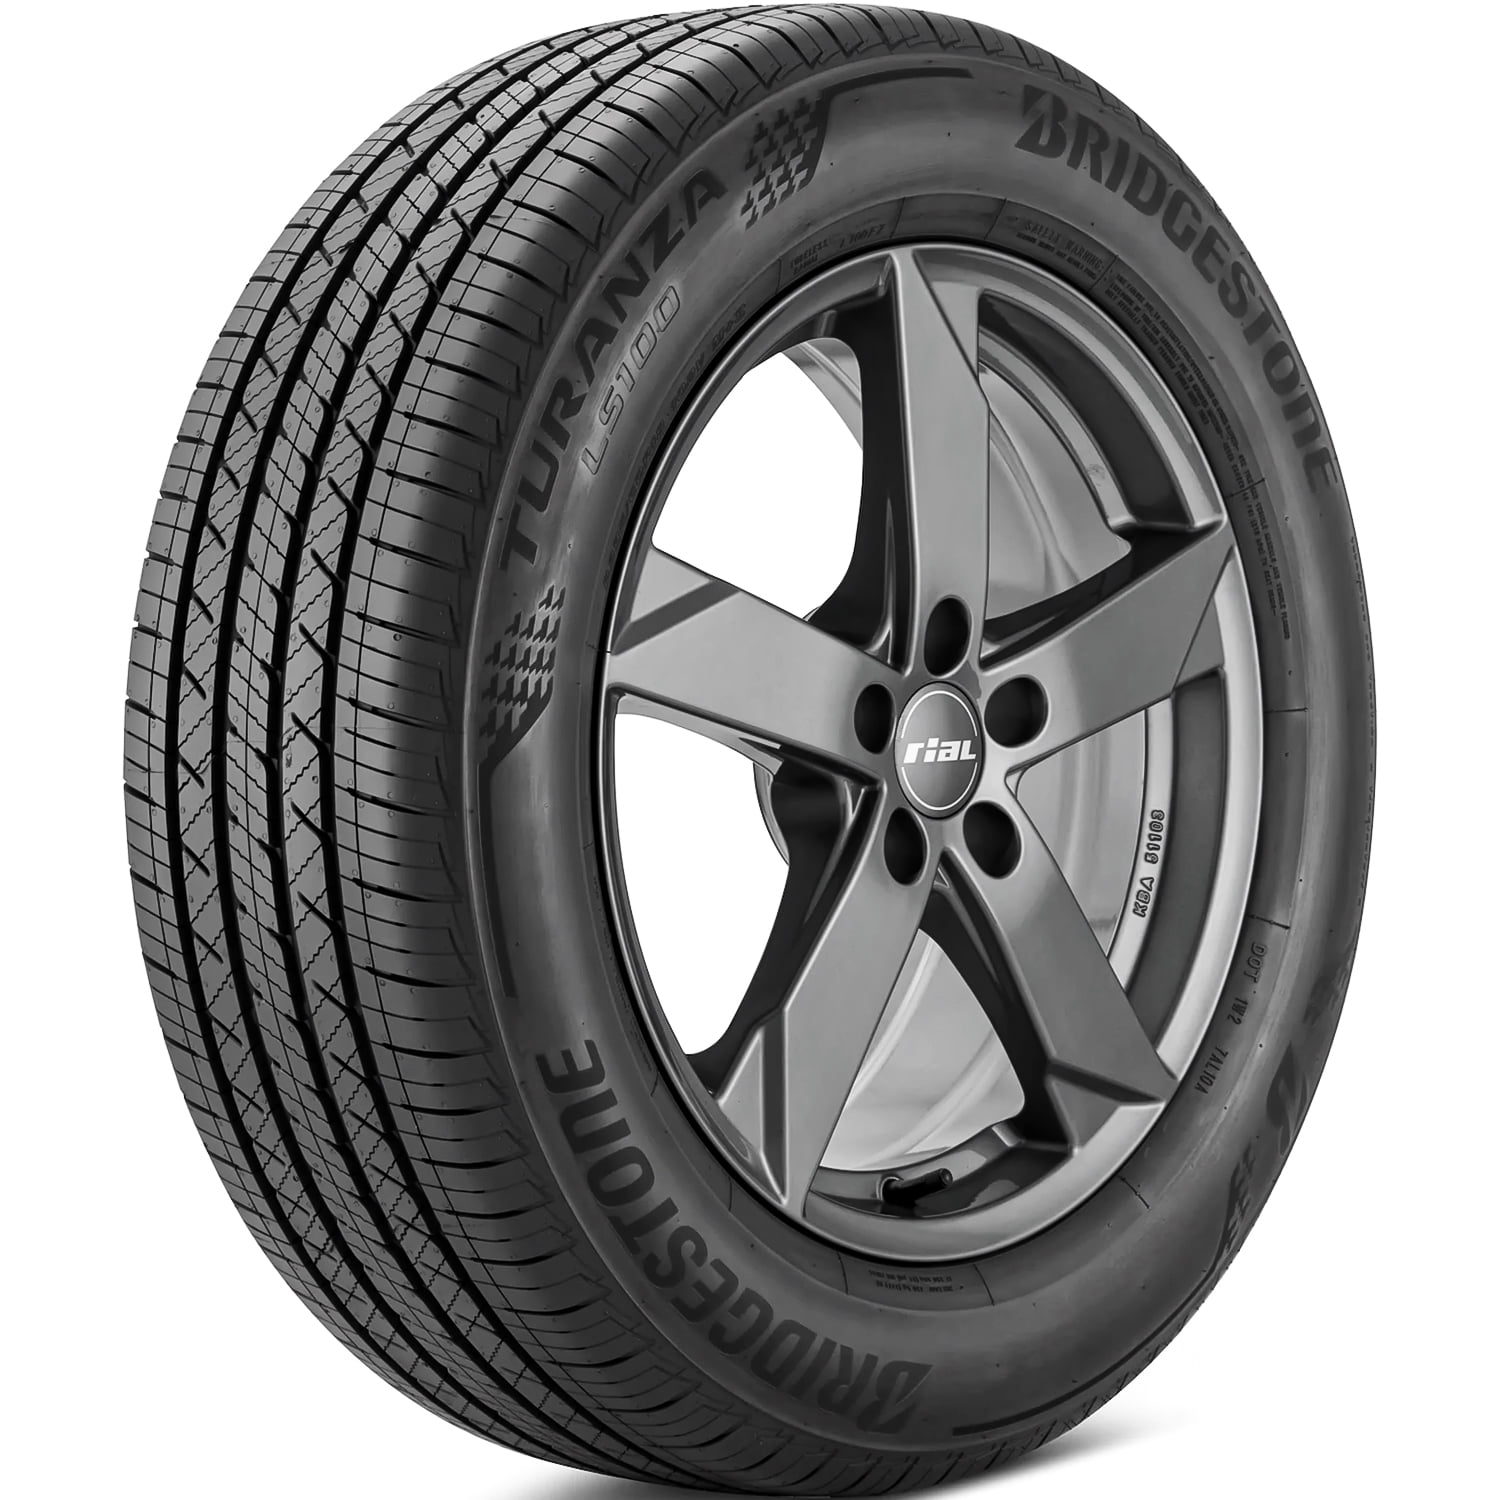 Bridgestone Turanza LS100 MOE Tire 97H XL 245/40R18